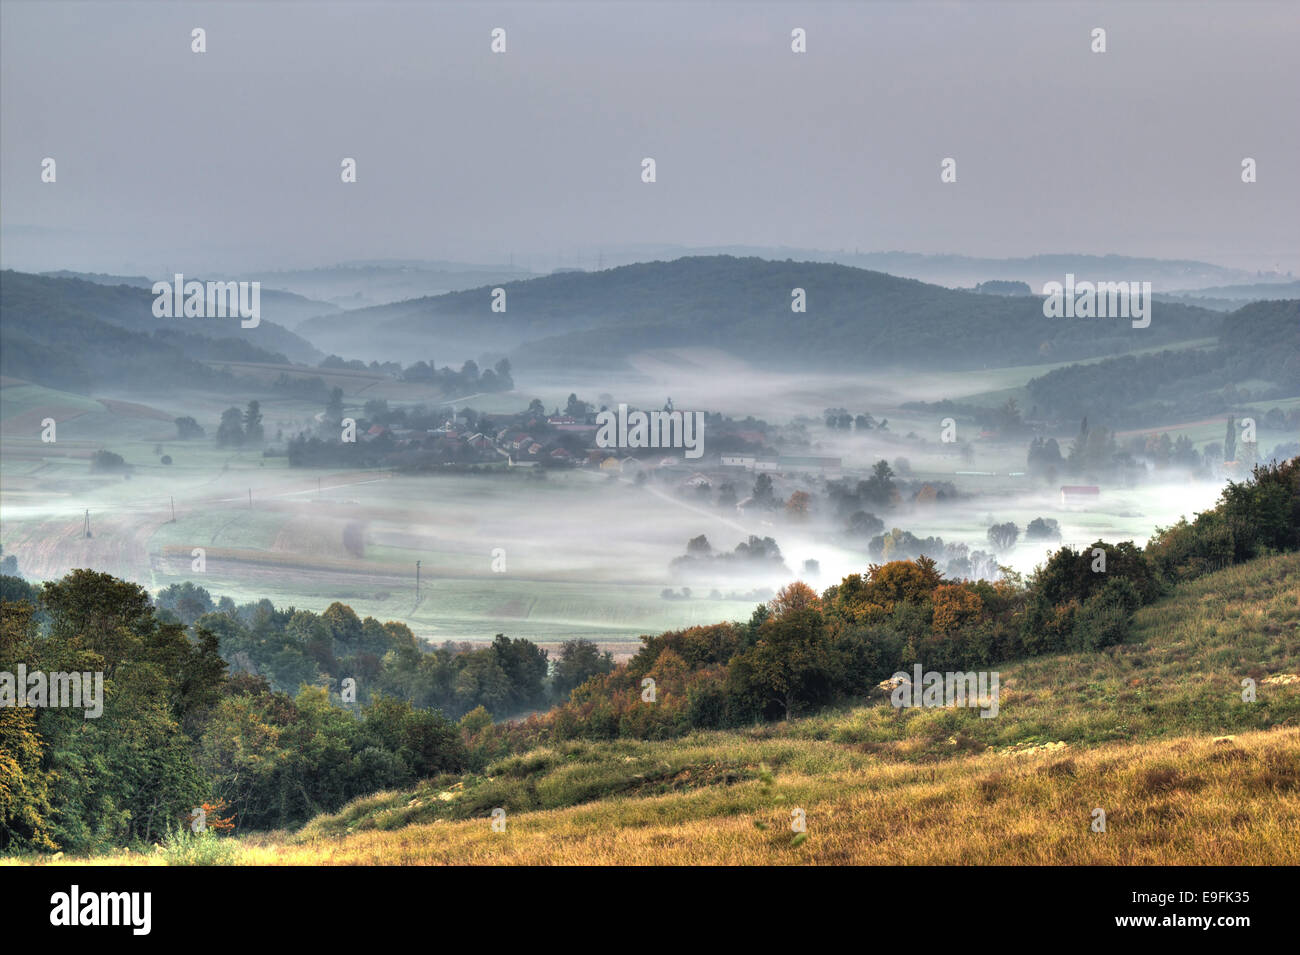 Rurale del villaggio di montagna nella nebbia vista aerea Foto Stock